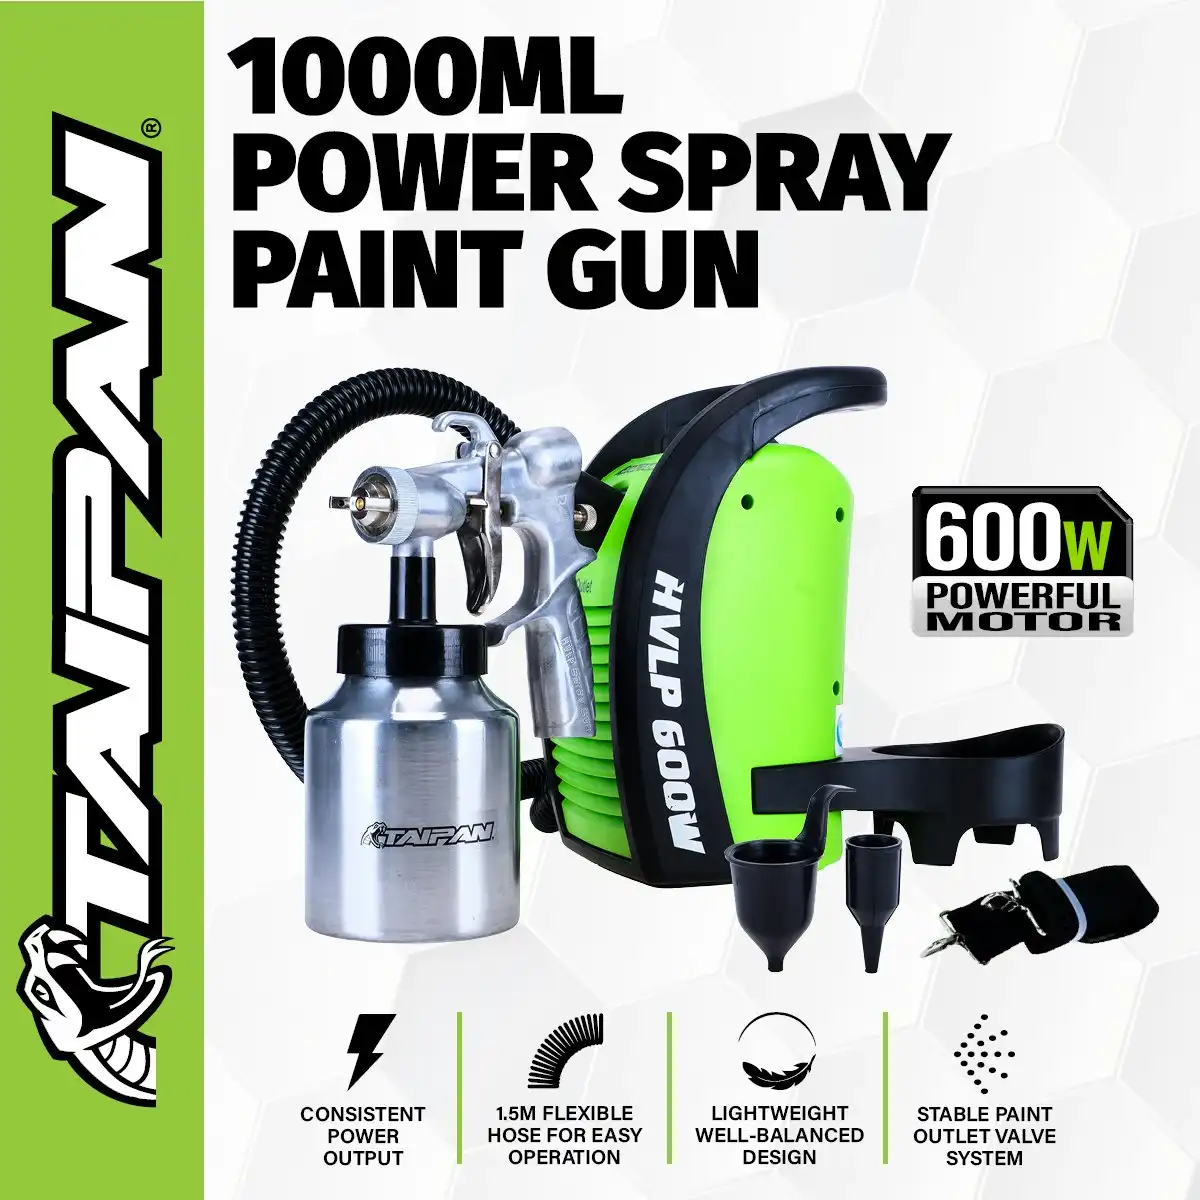 Taipan 1000ml Paint Spray Gun Various Spray Patterns 600W Powerful Motor